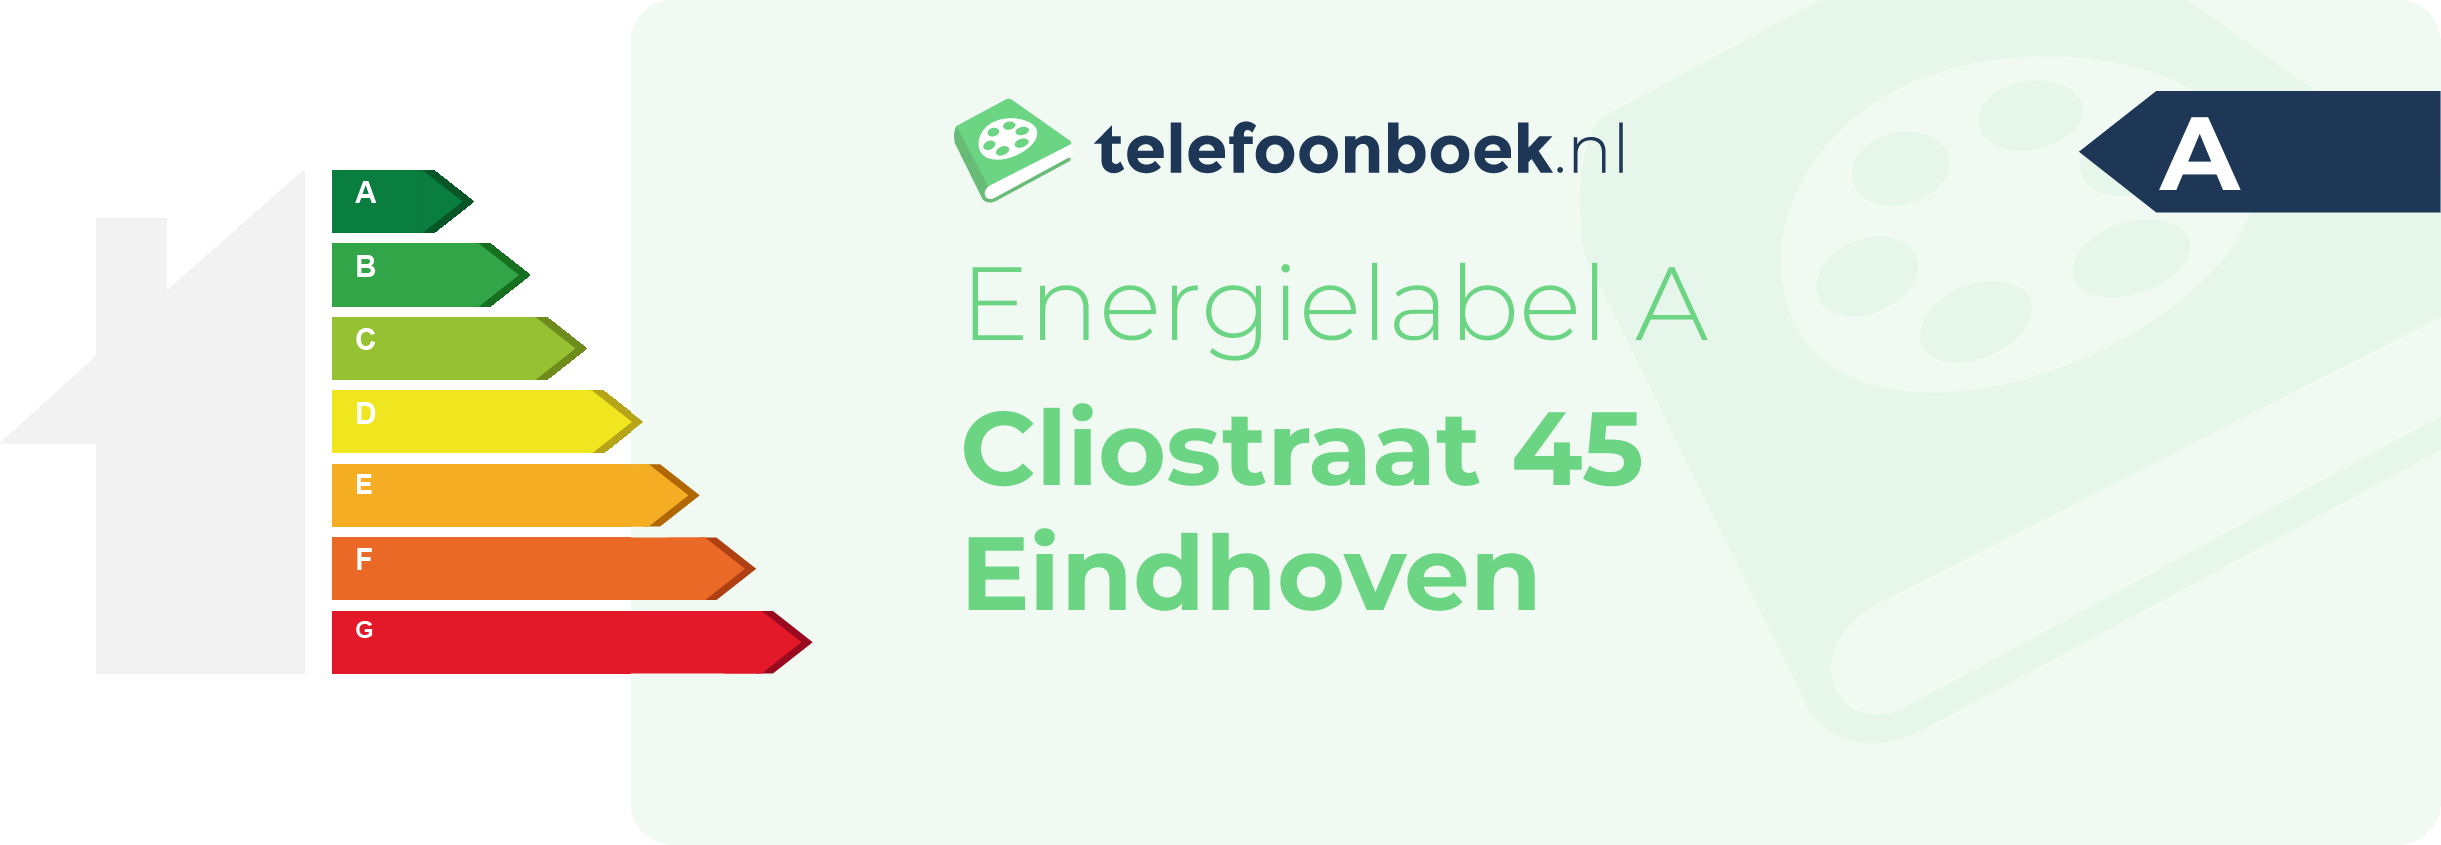 Energielabel Cliostraat 45 Eindhoven